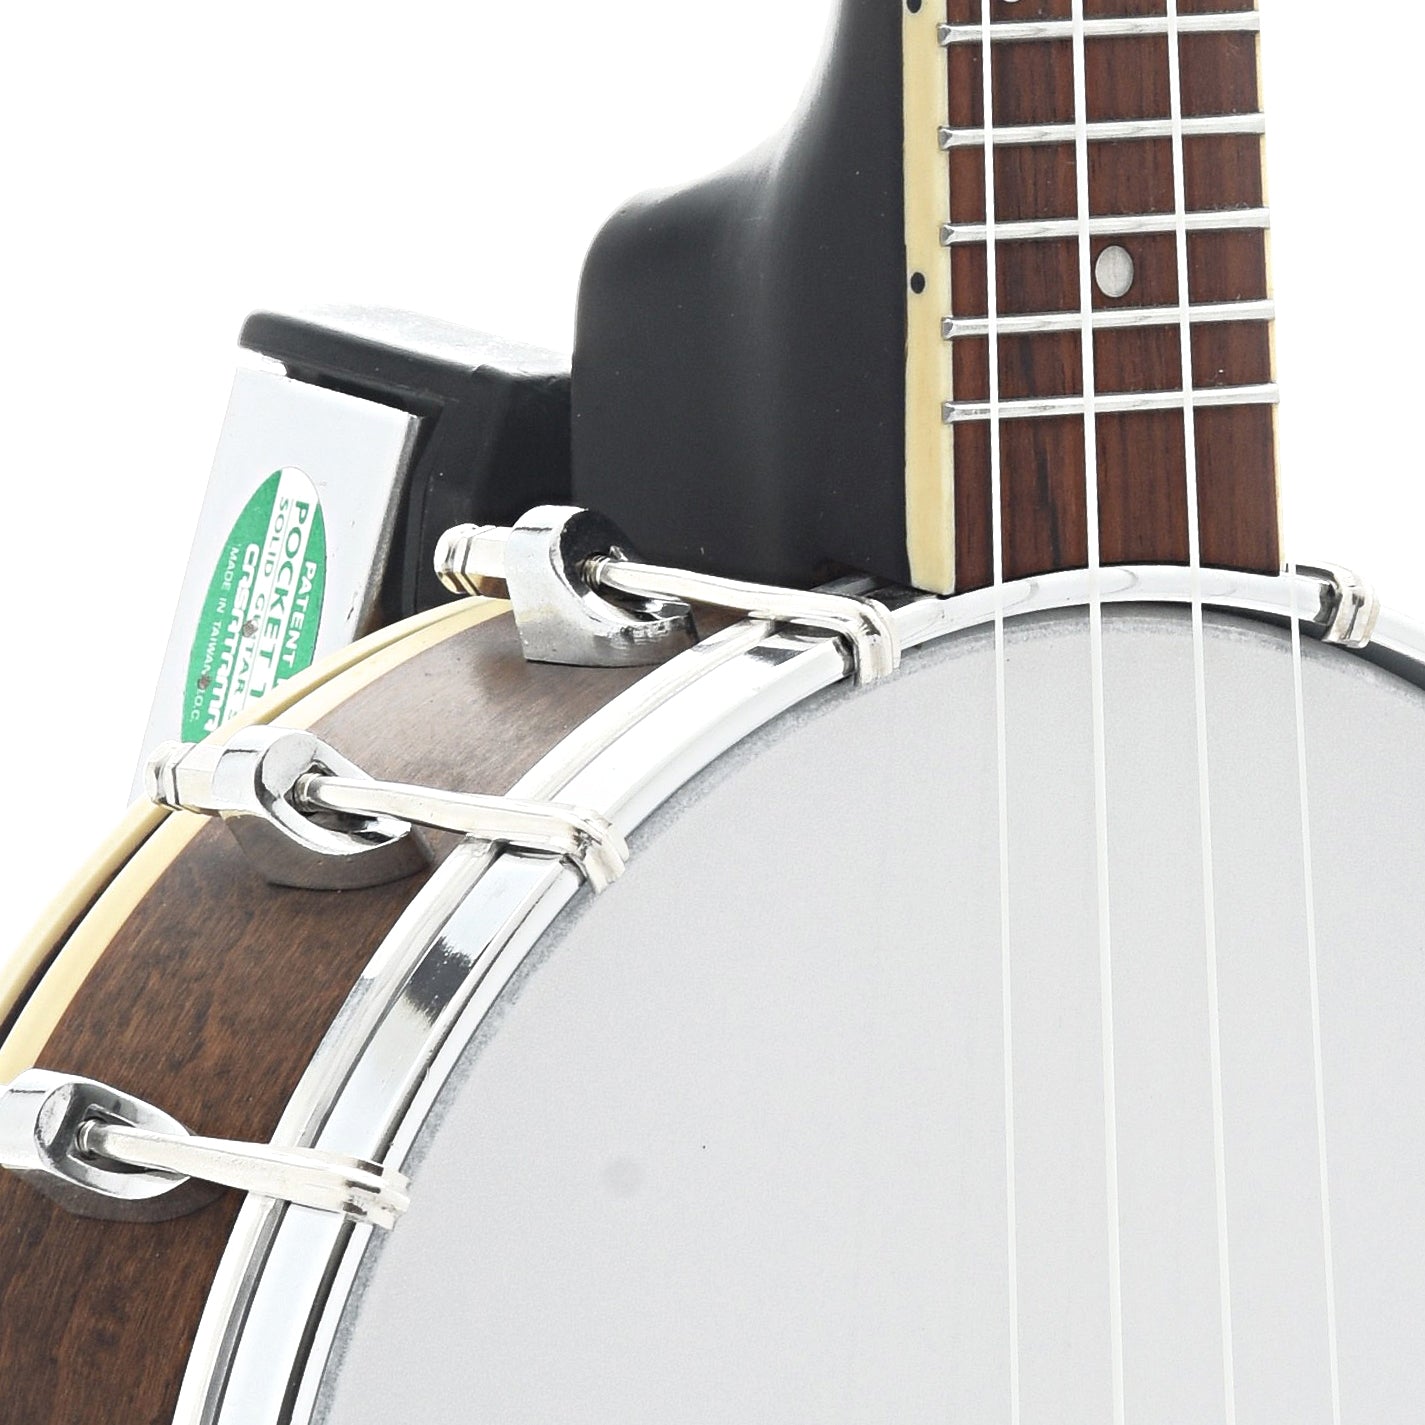 Image 4 of Gold Tone Soprano Banjo Ukulele & Case - SKU# GTBUS : Product Type Banjo Ukuleles : Elderly Instruments